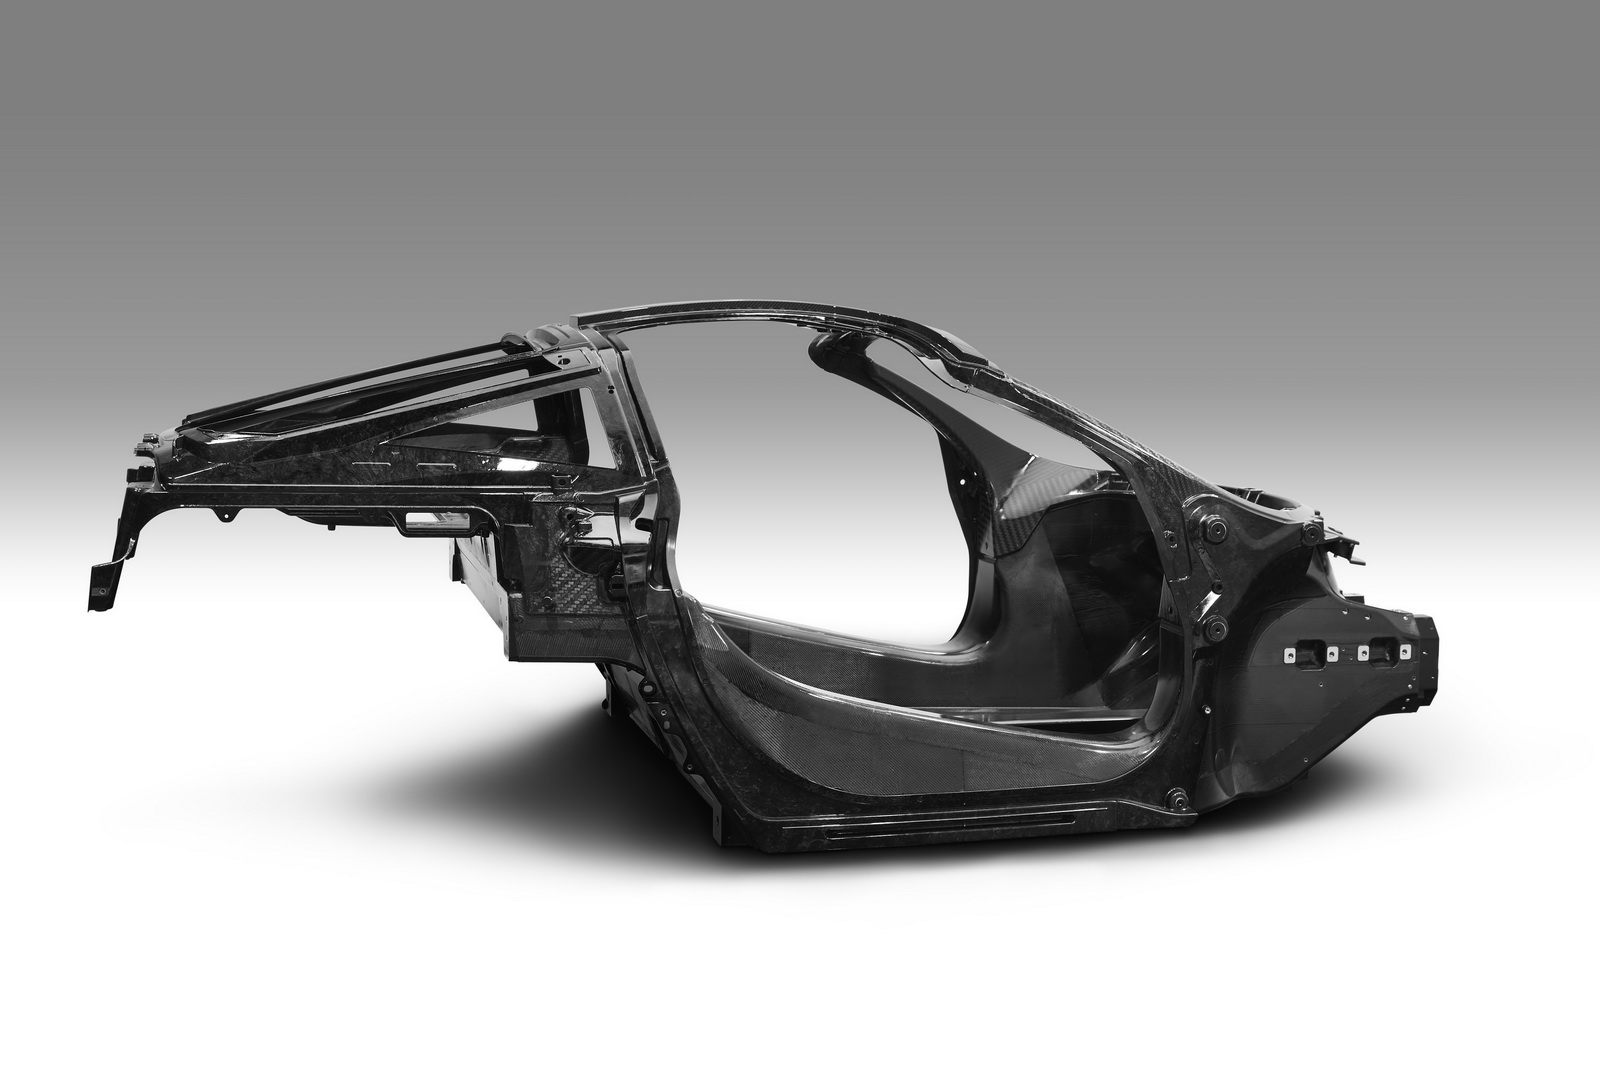 “مكلارين” تقرر نقل إنتاج الشاصيه لسياراتها من النمسا إلى المملكة المتحدة McLaren